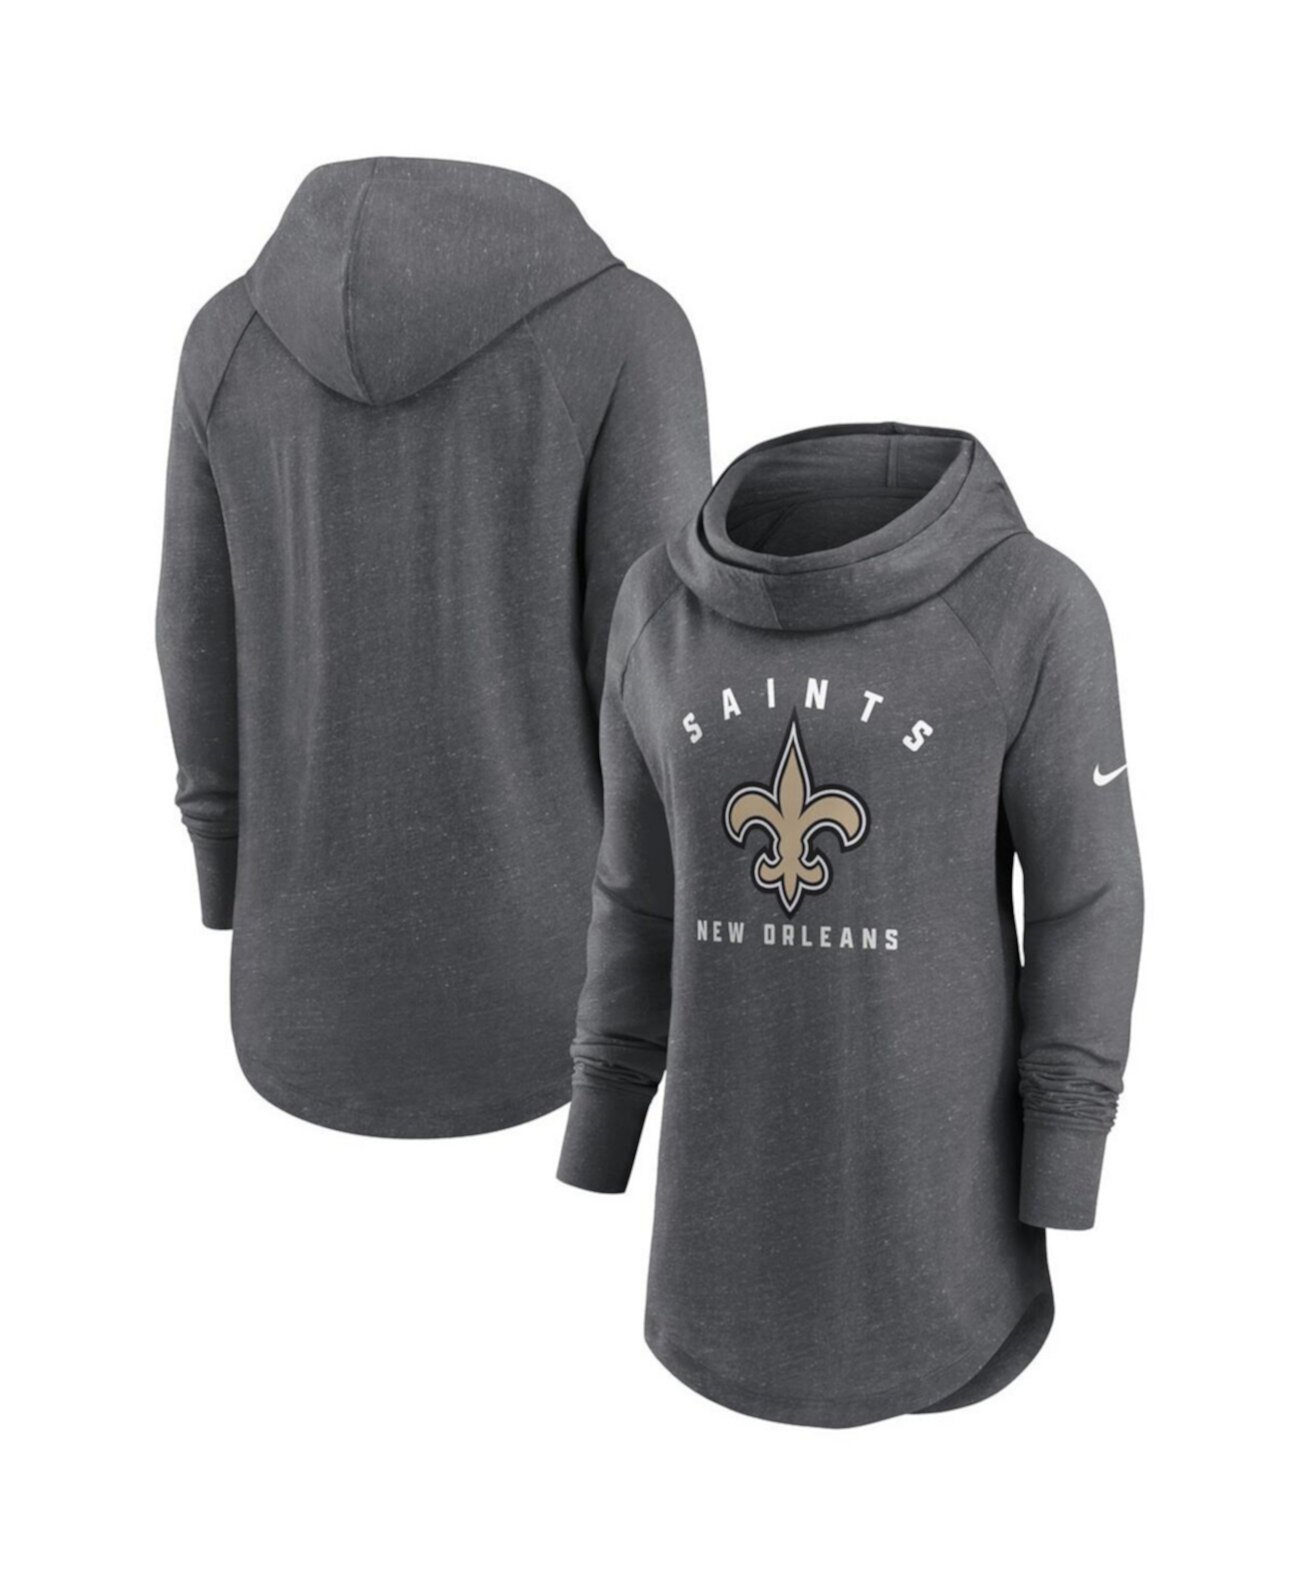 Женский пуловер с капюшоном цвета «хизер» темно-серого цвета New Orleans Saints реглан с воронкообразным вырезом Nike